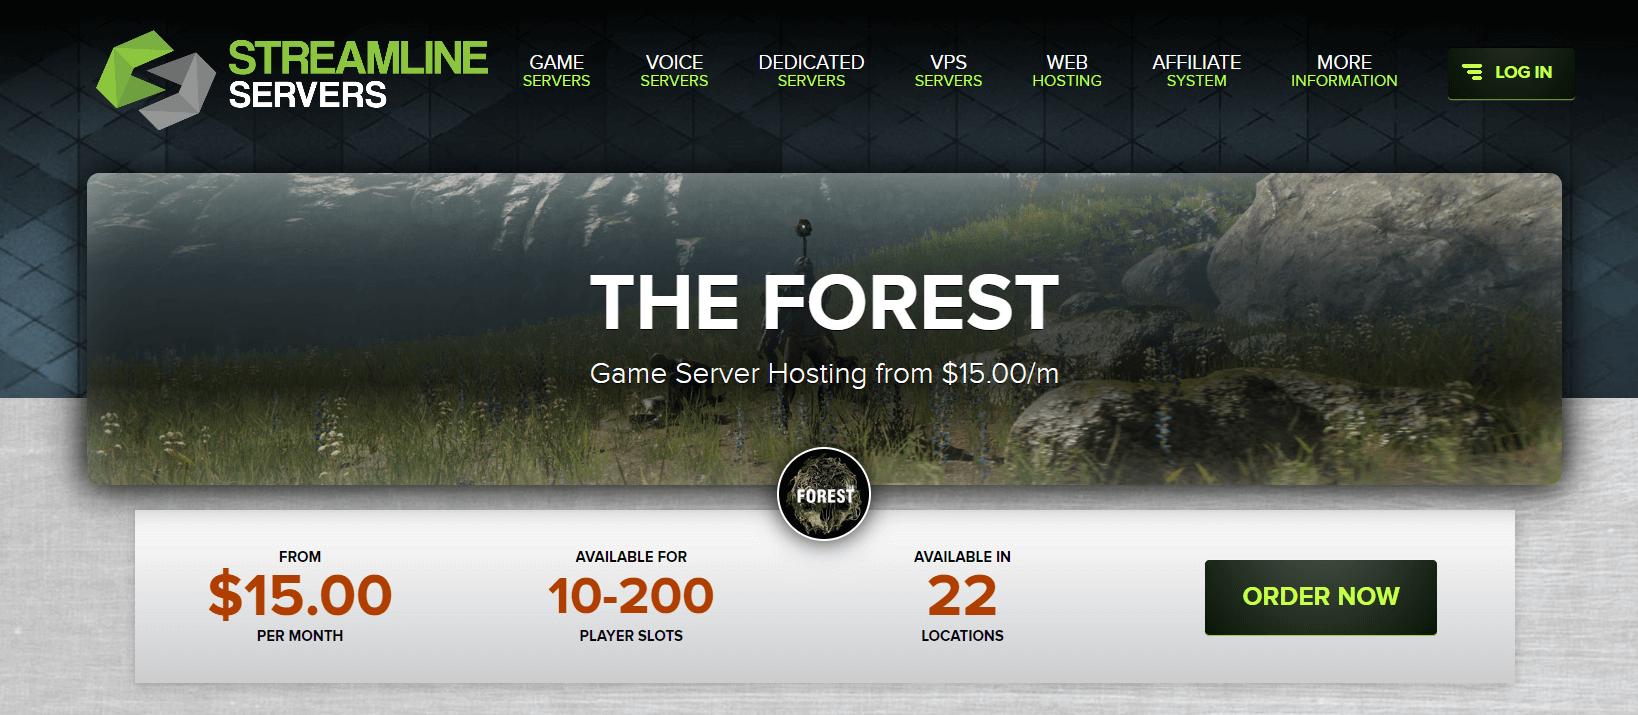 Streamline servers hosting provider for the forest